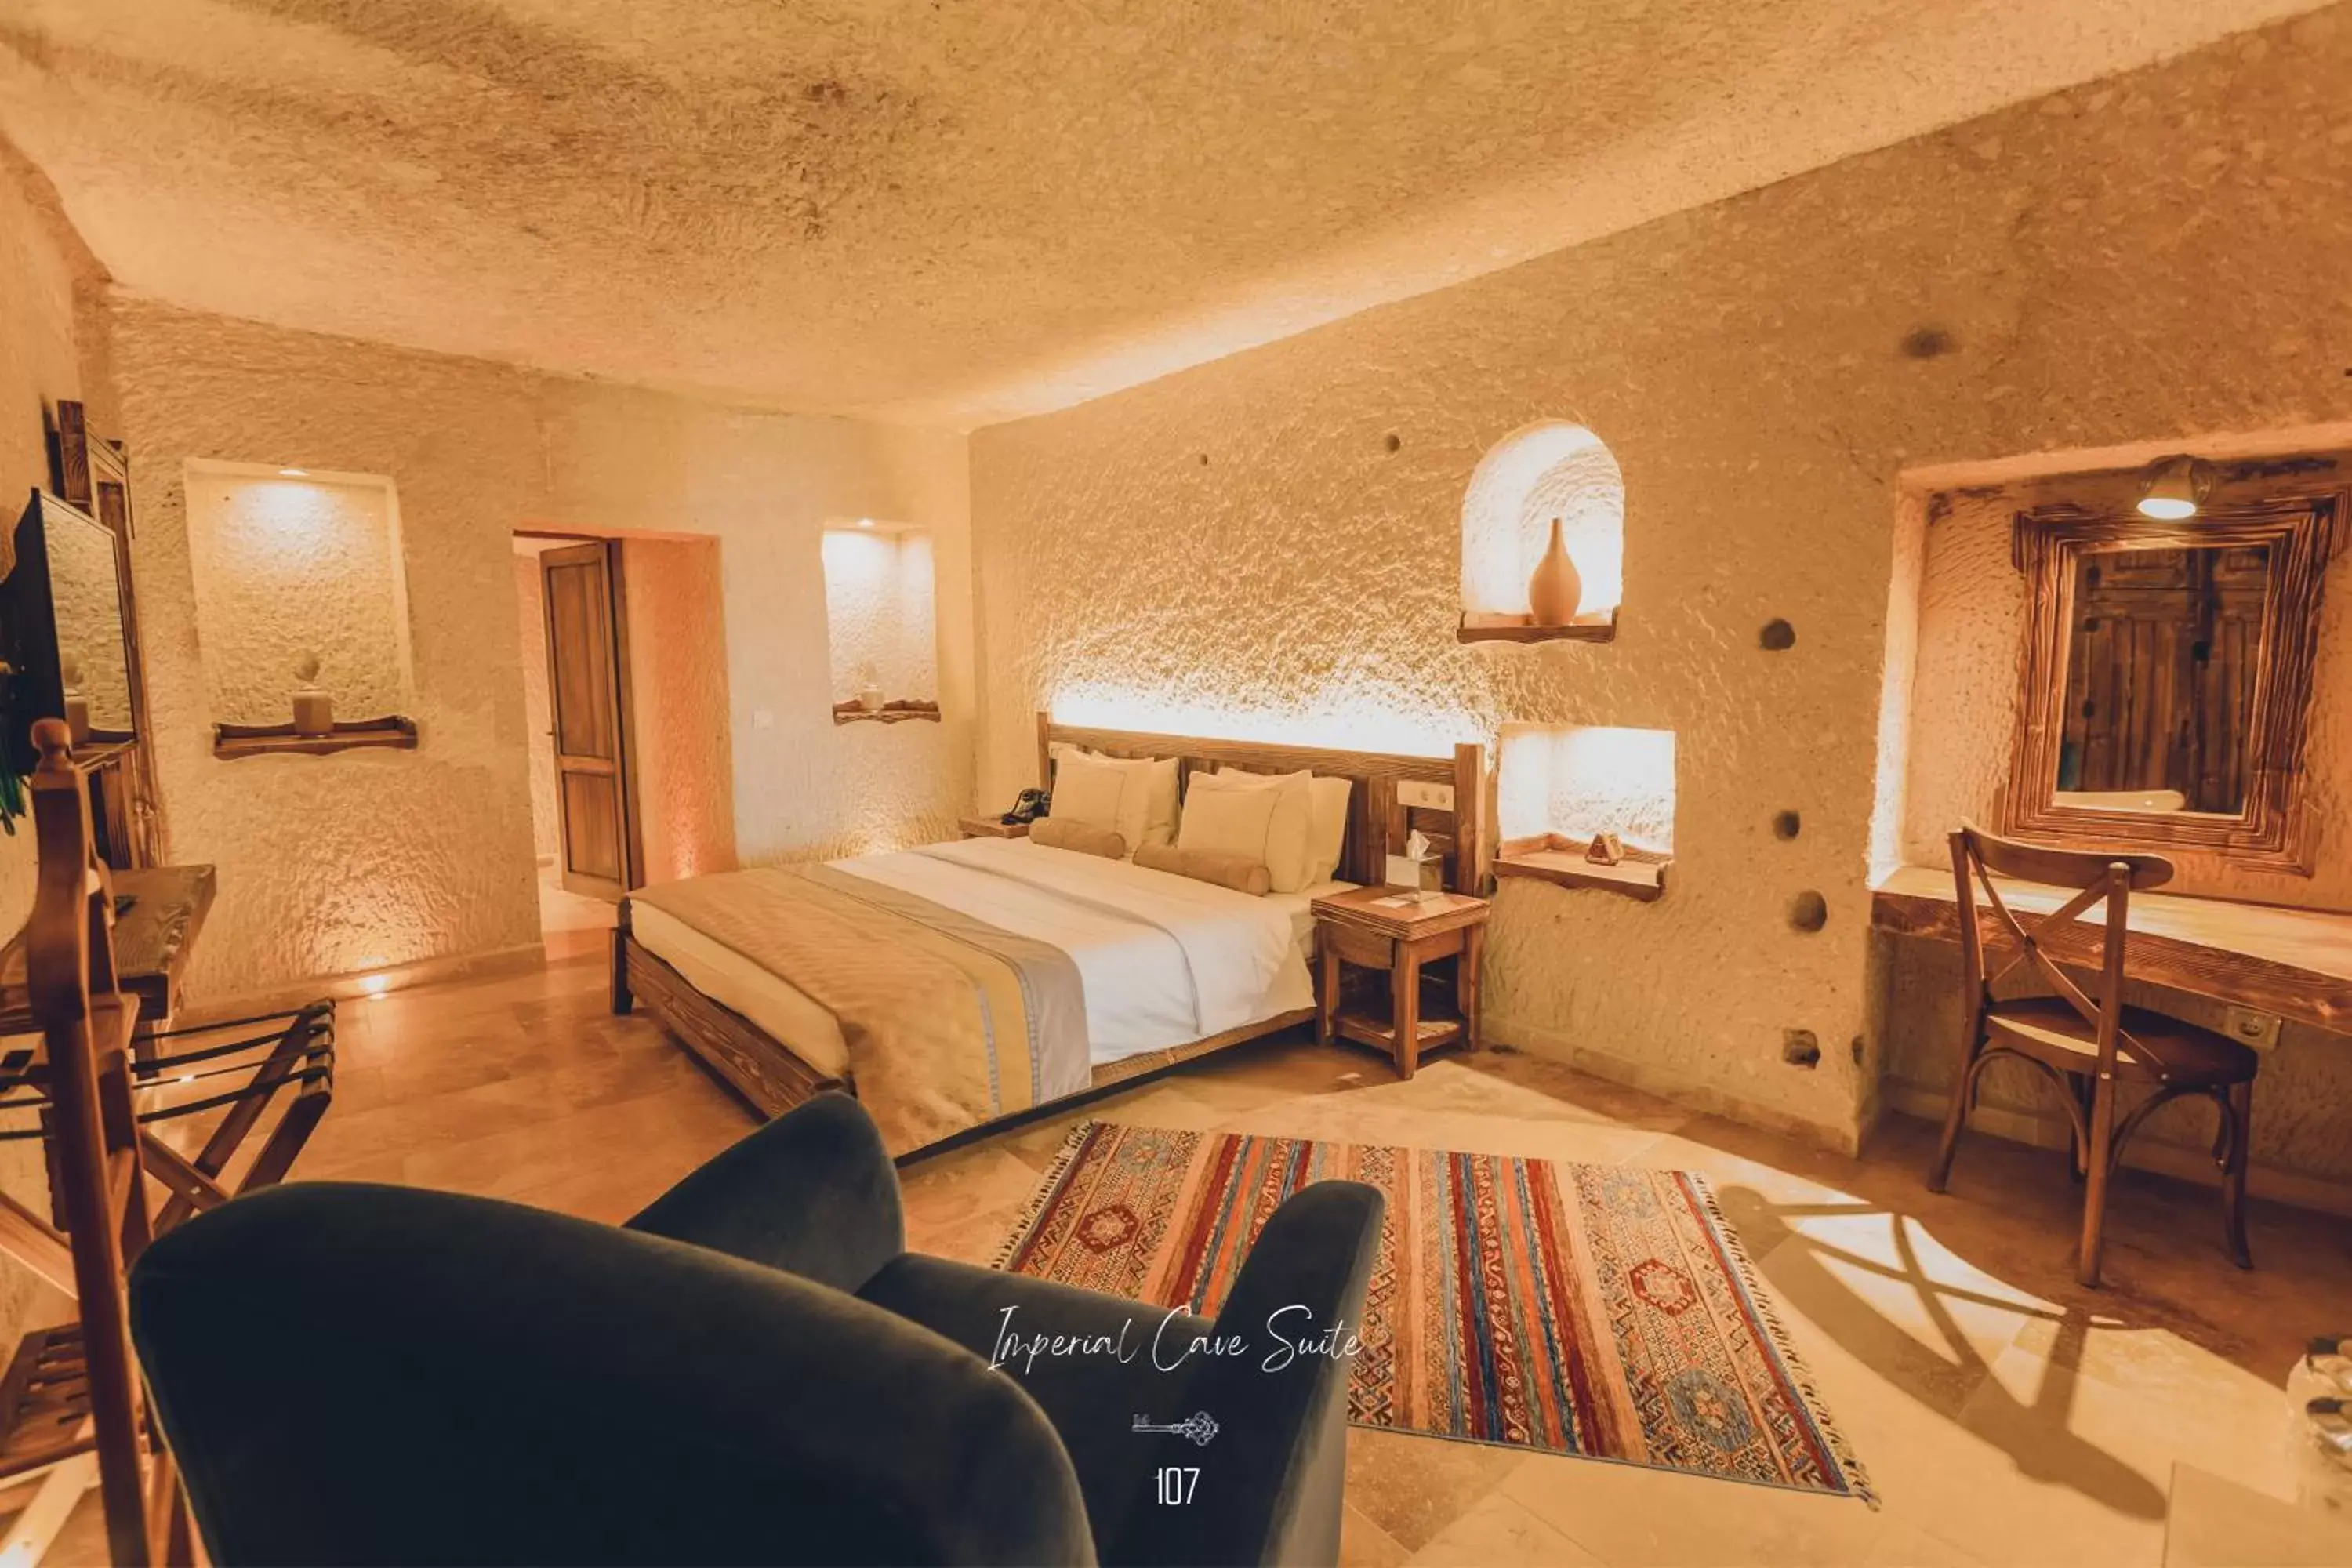 Bedroom in Nino Cave Suites